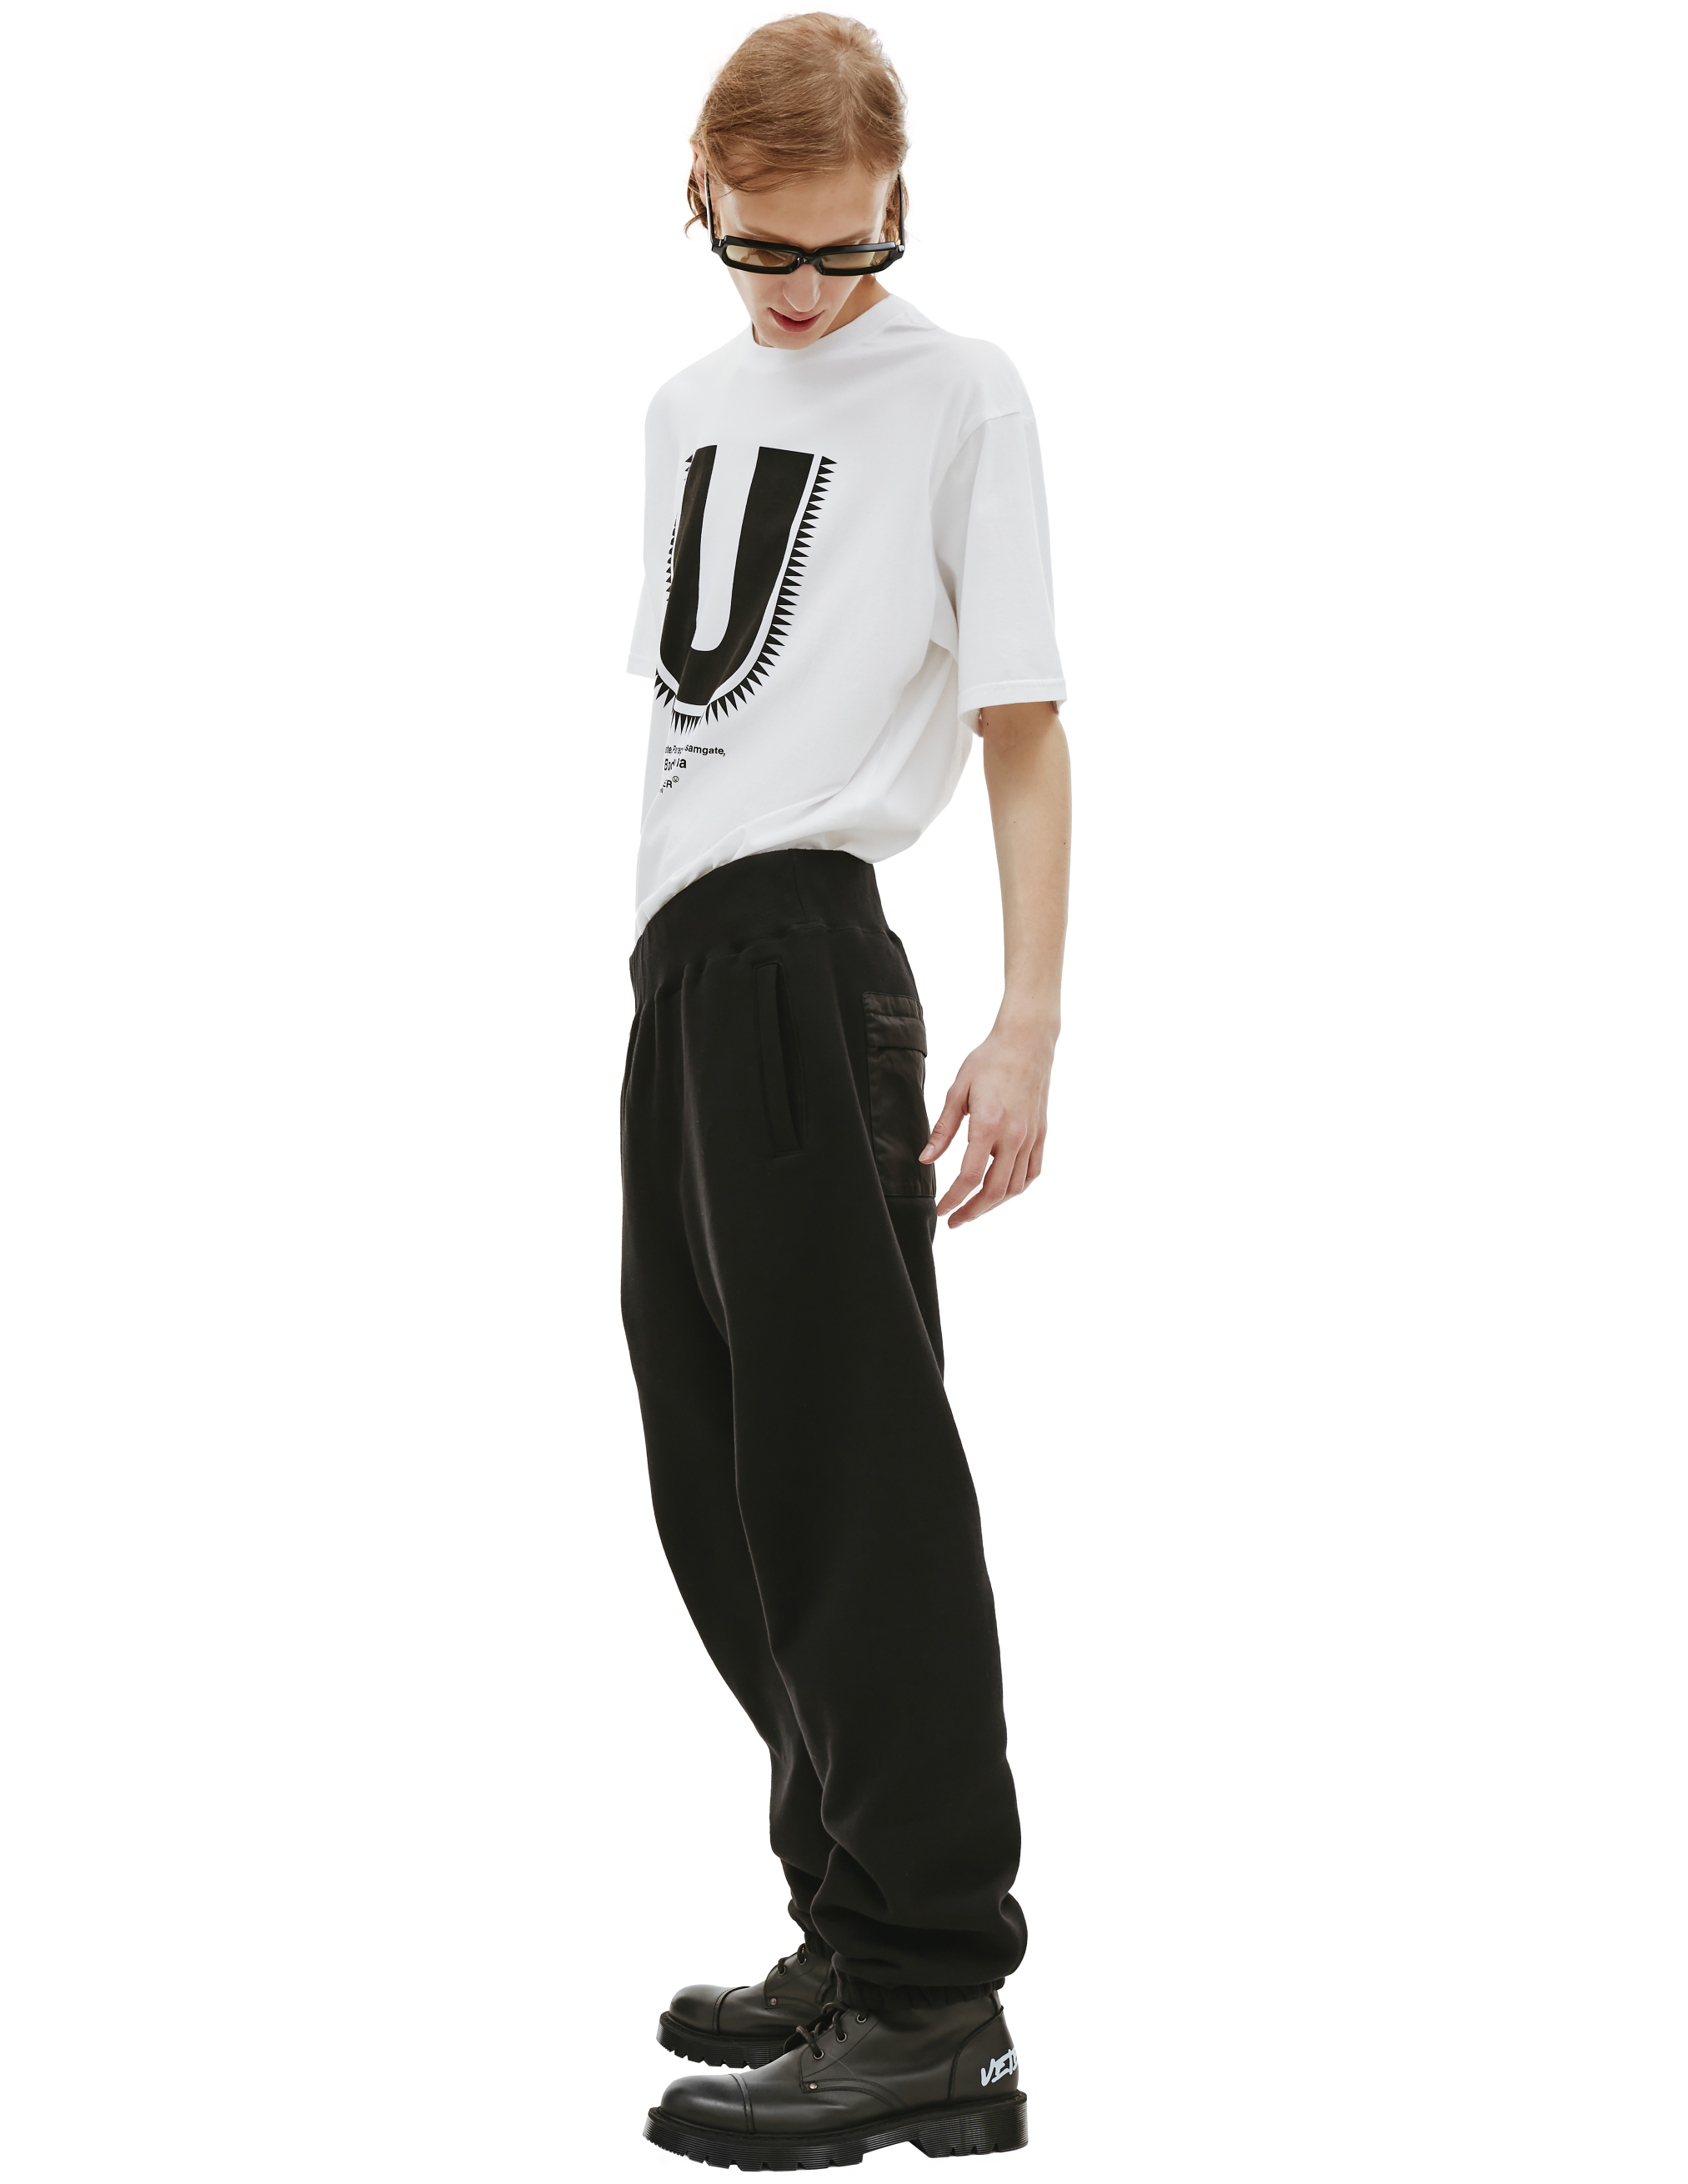 Спортивные брюки с вышивкой на кармане Undercover UC2B4503/3, размер 5 UC2B4503/3 - фото 2